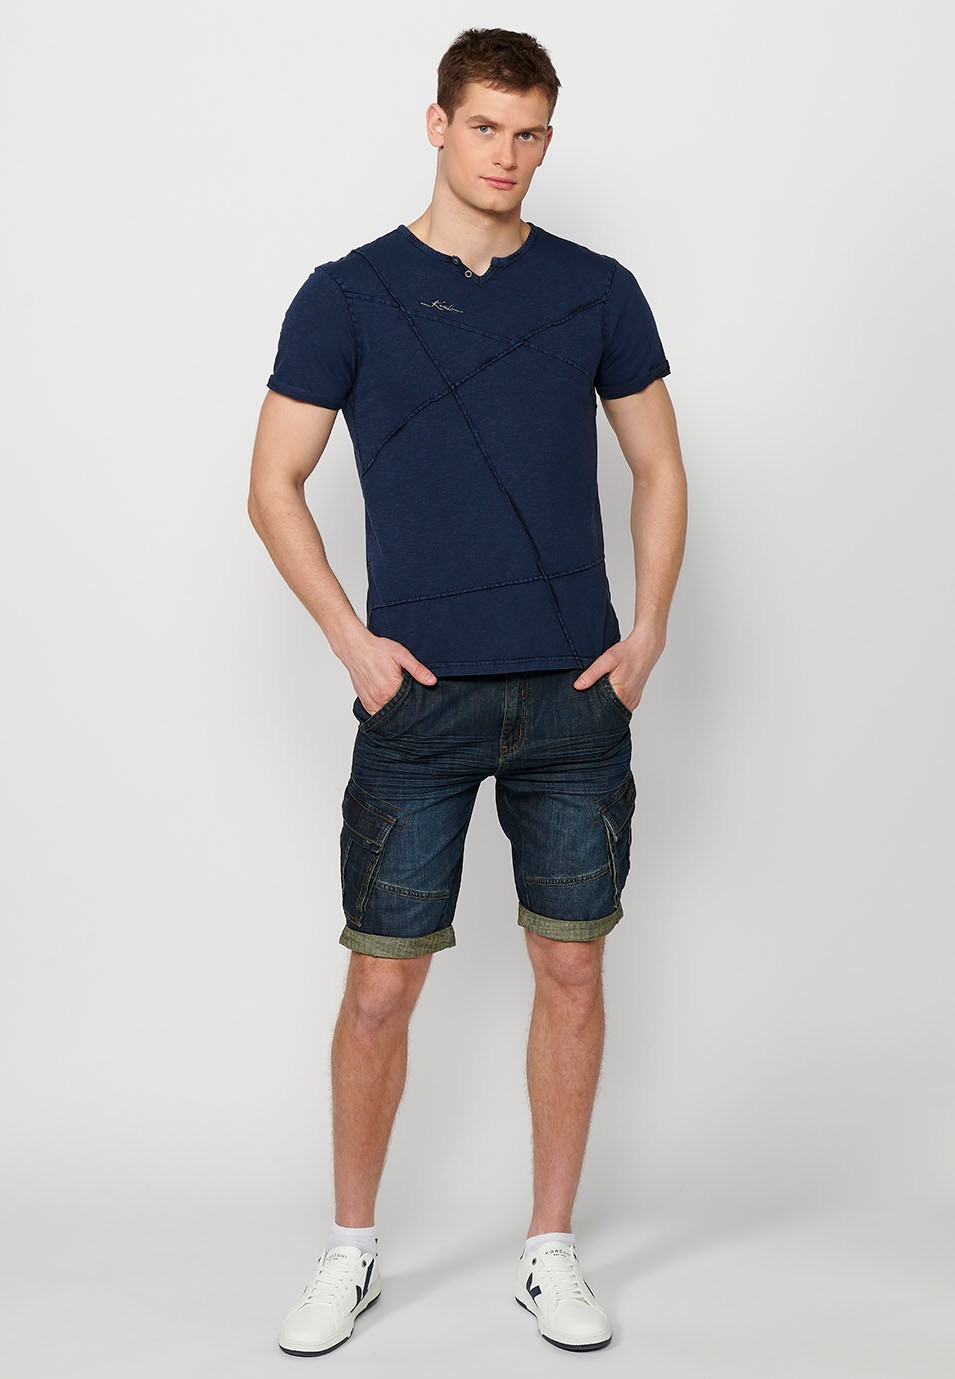 T-shirt manches courtes, col rond avec ouverture, coloris bleu pour homme